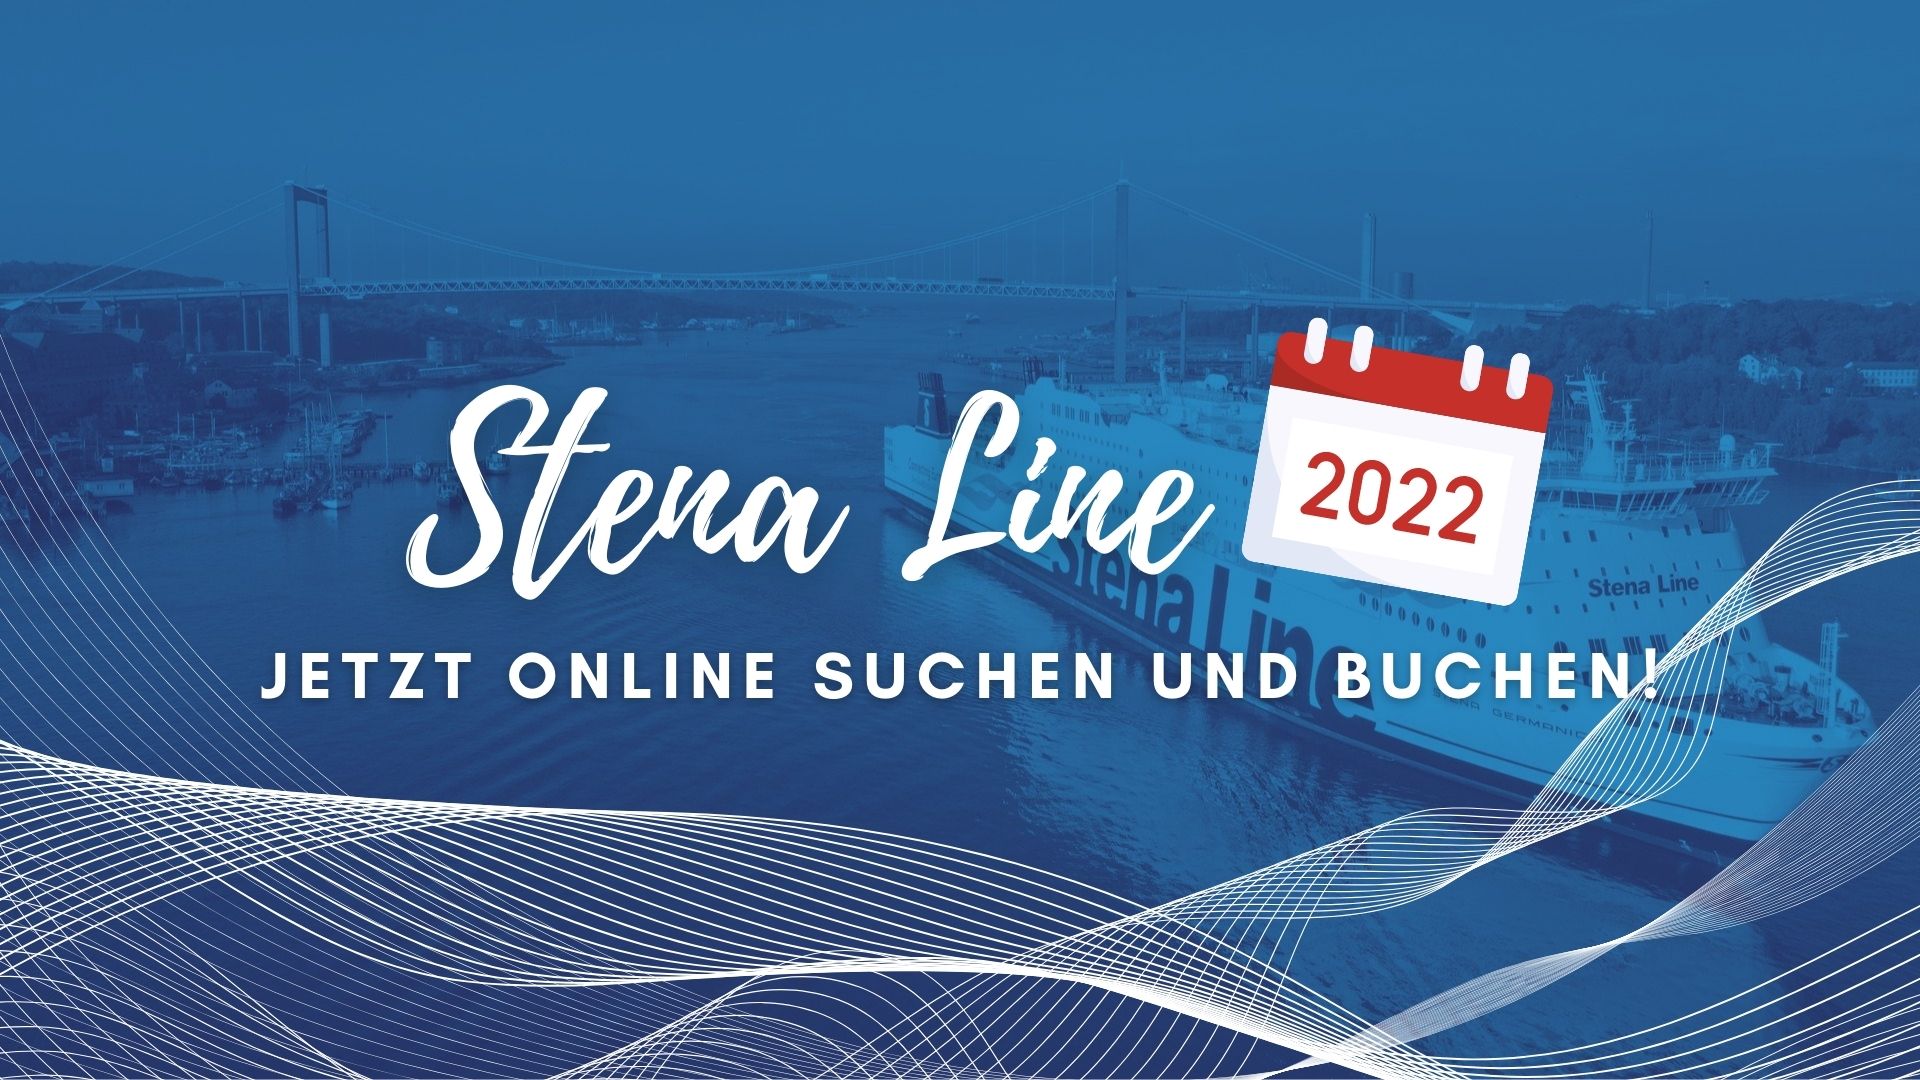 Stena Line 2022 buchen!